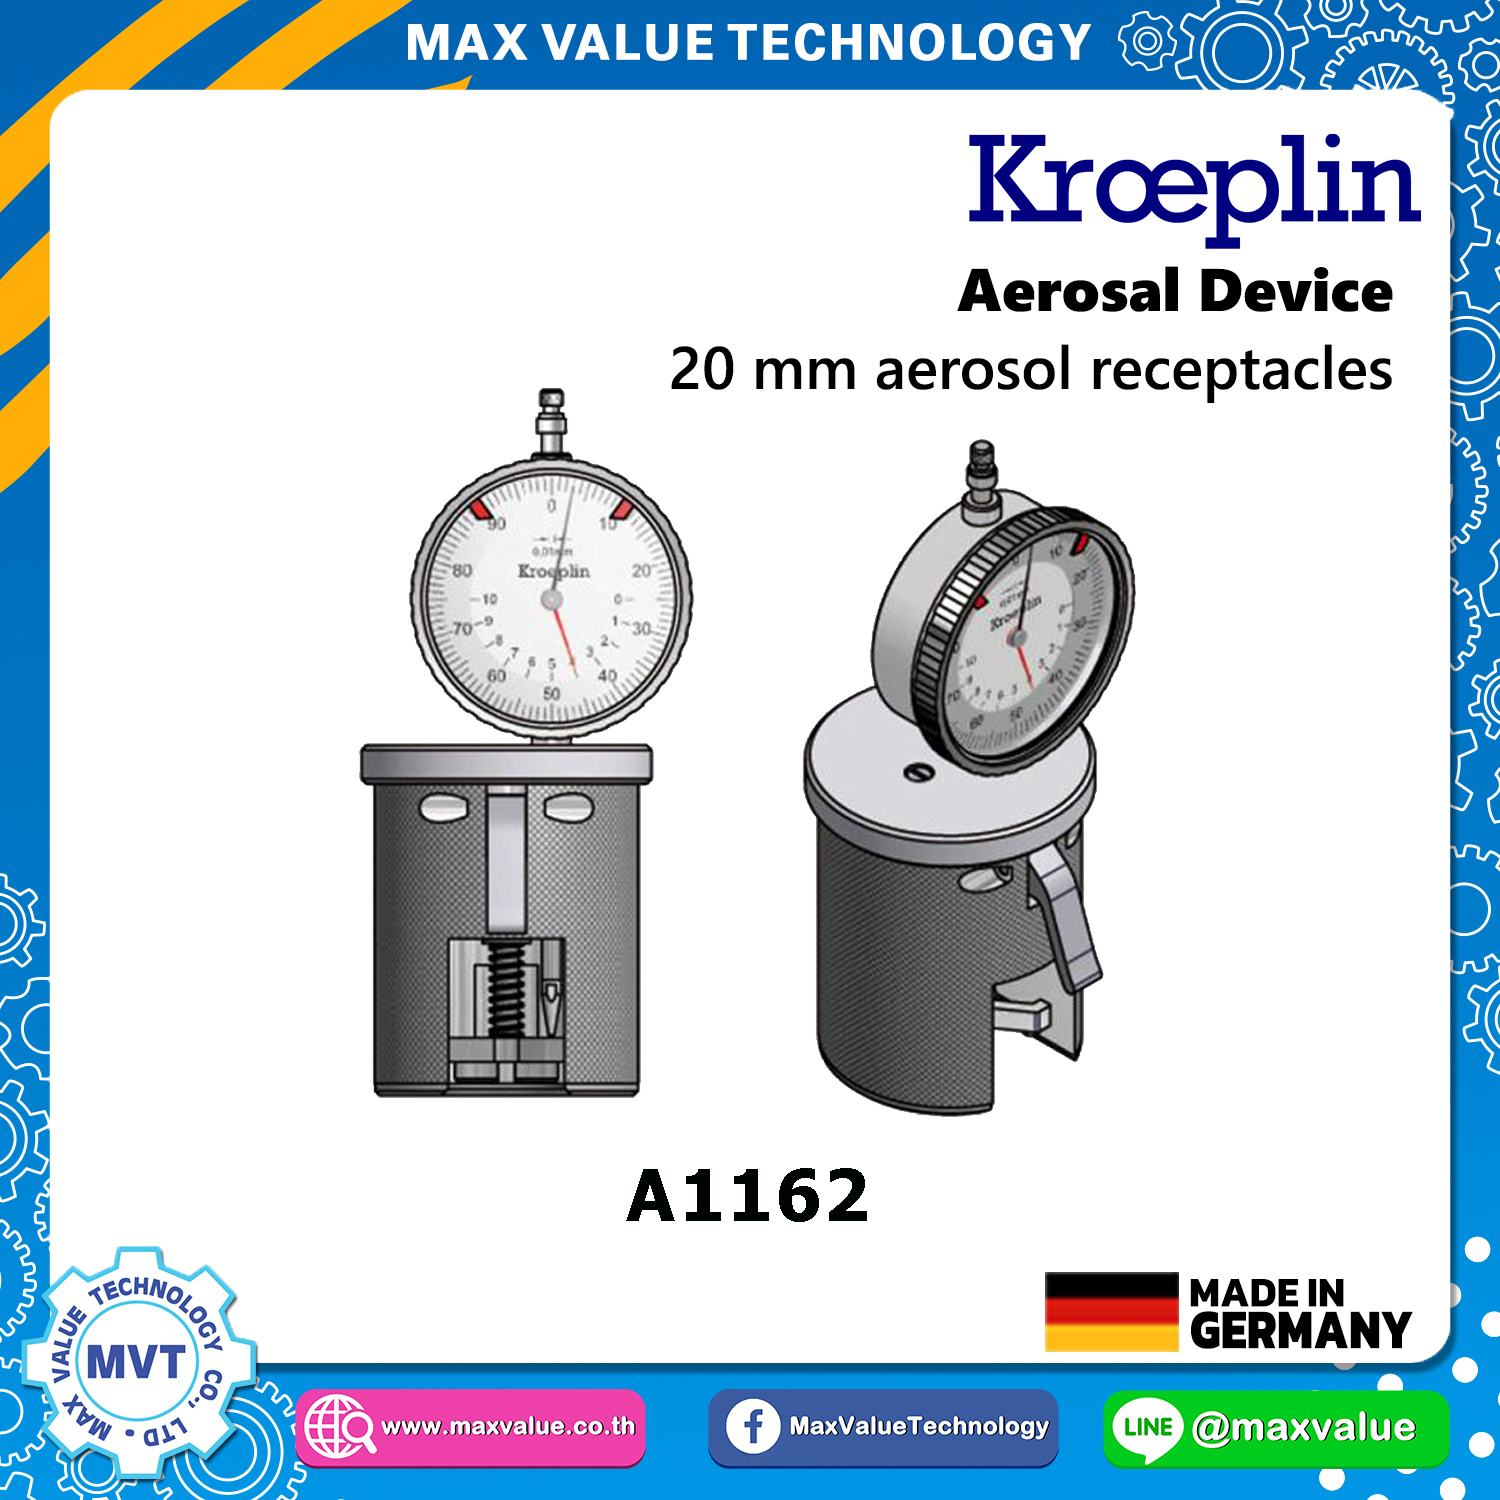 A1162/AE1162 - Aerosol devices - 20 mm aerosol receptacles